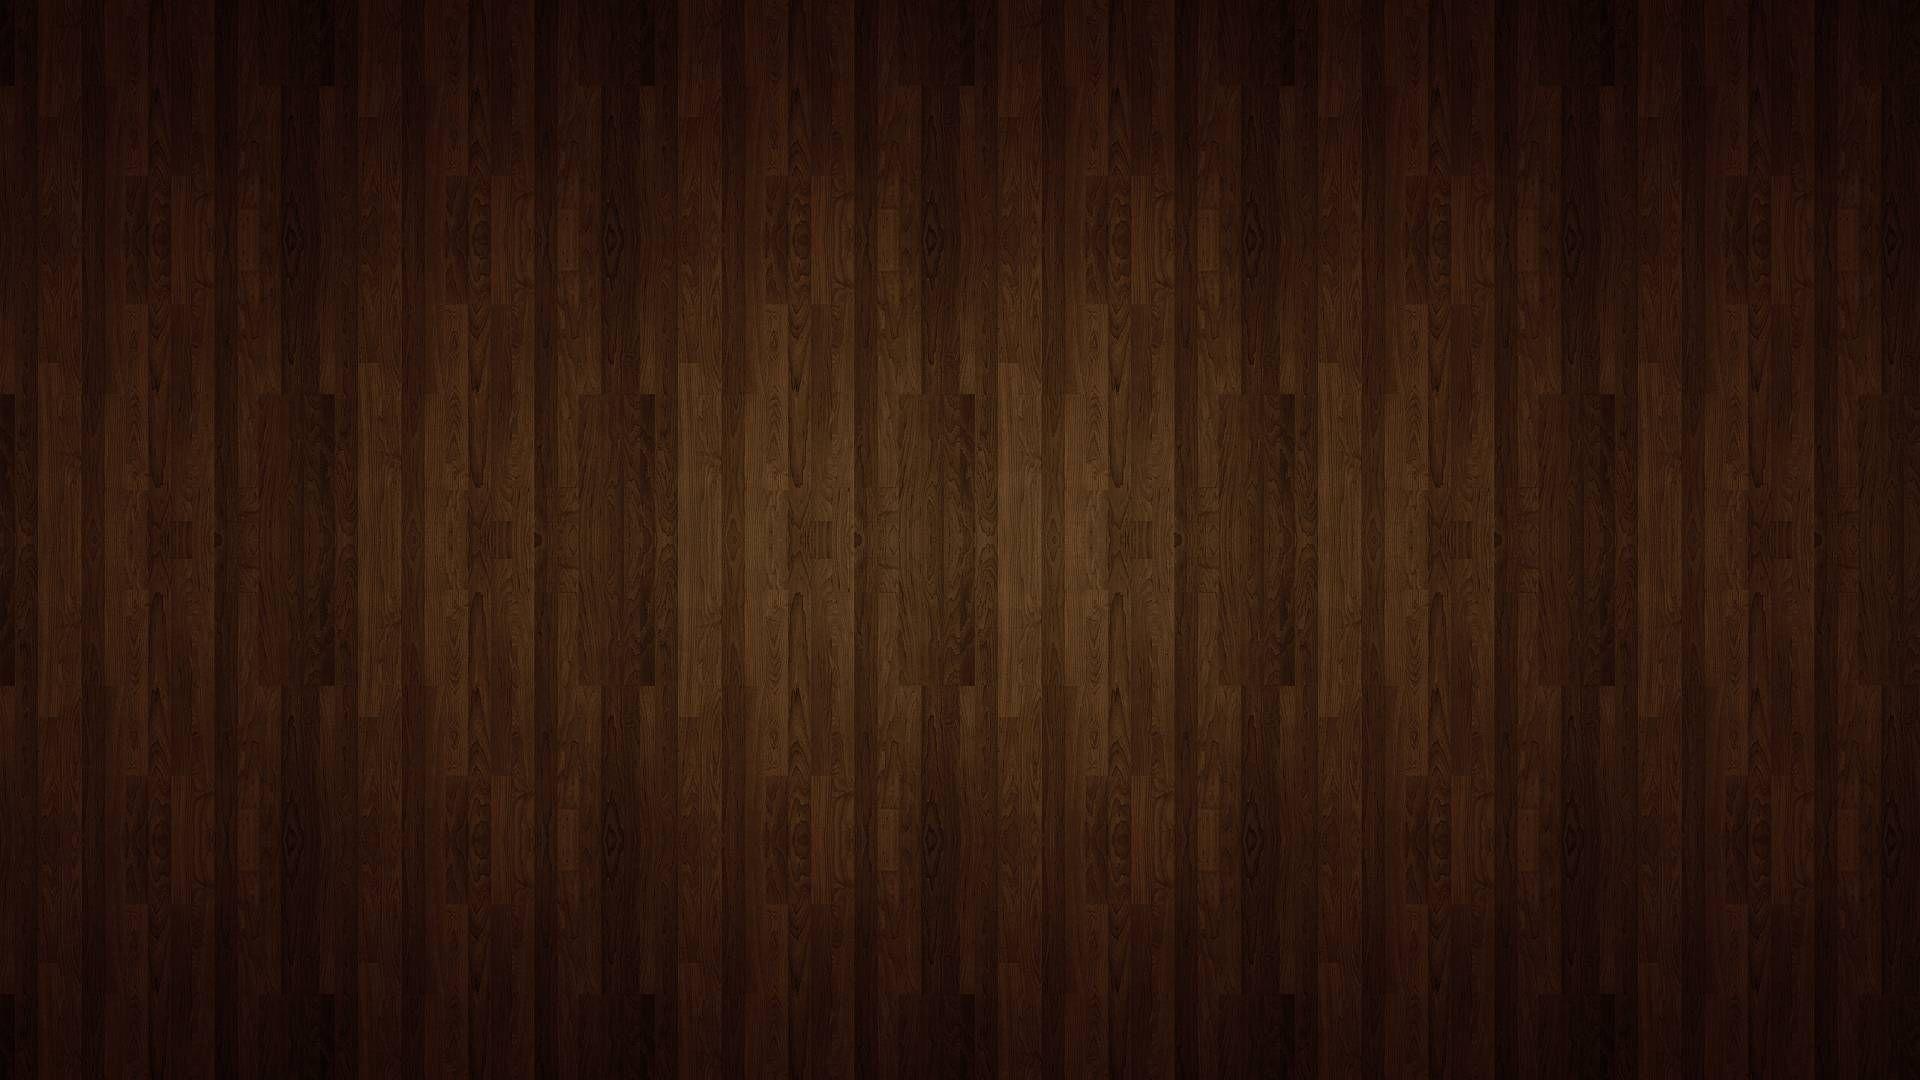 Wood Texture Wallpaper For Walls Fancy.com